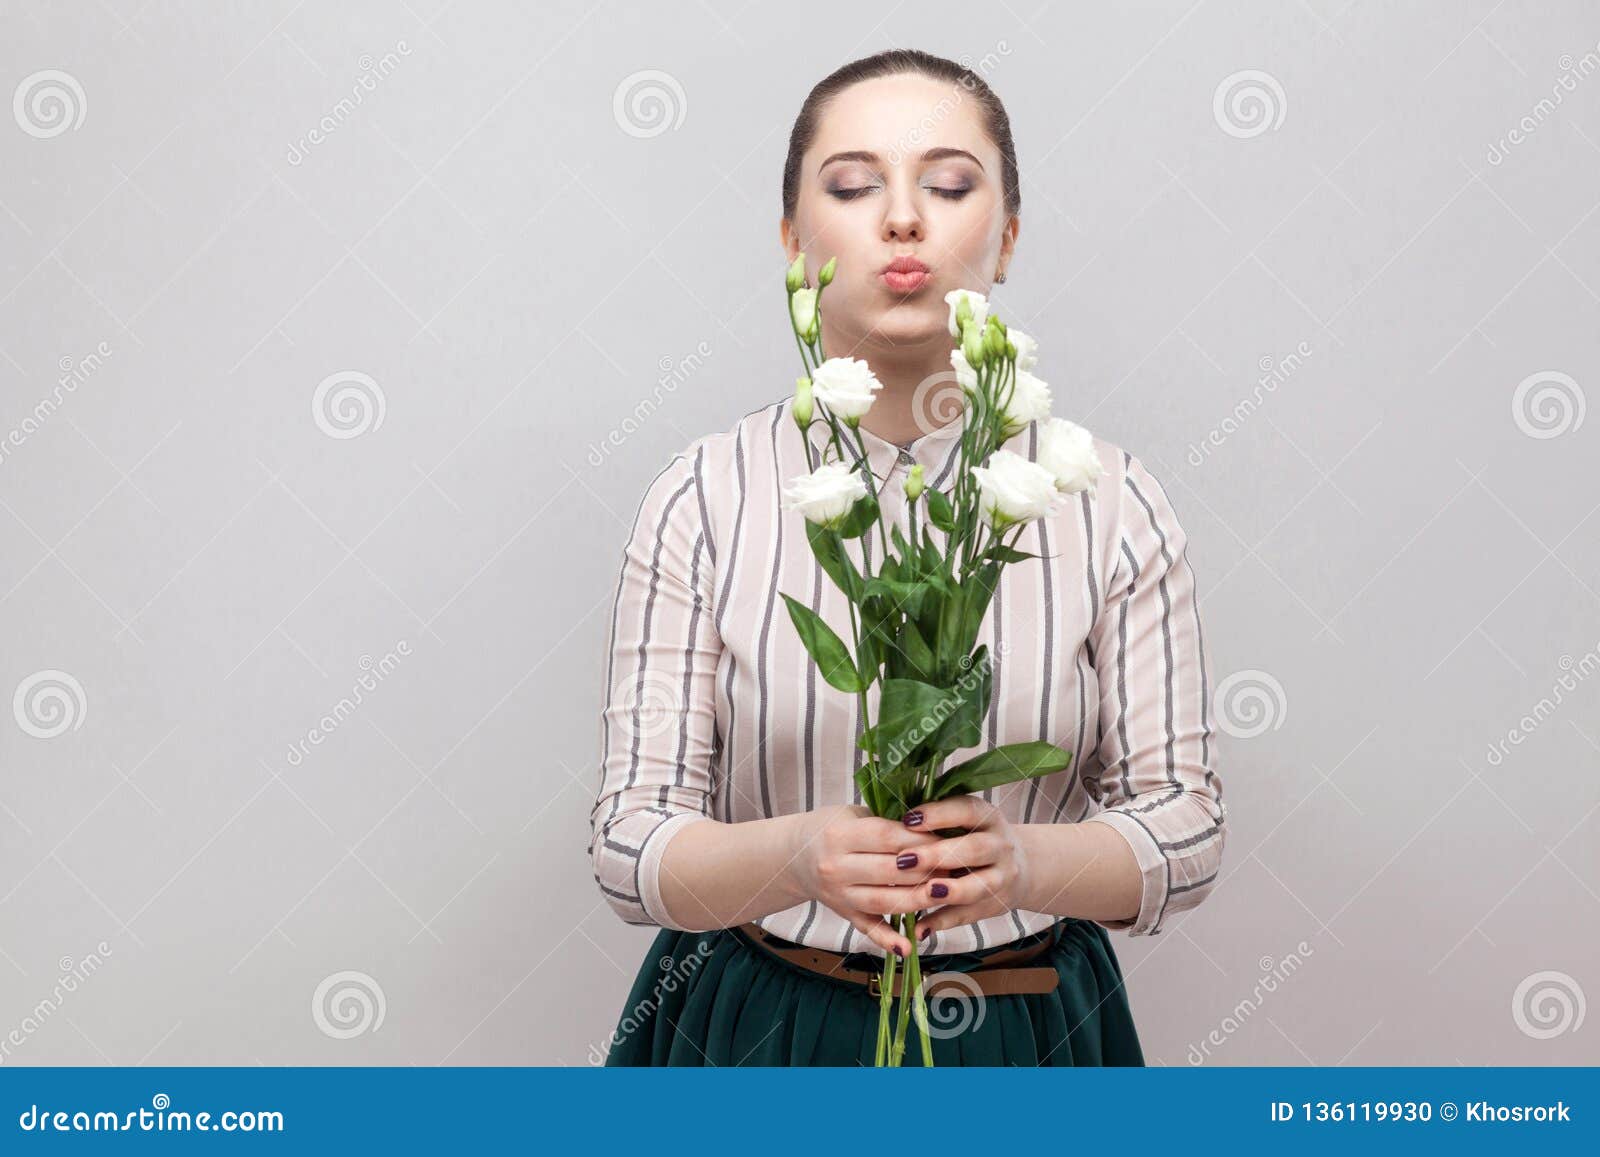 Портрет привлекательной романтичной прекрасной молодой женщины в striped рубашке и зеленый букет удерживания юбки белых цветков и отправки поцелуя воздуха Крытый, съемка студии, на серой предпосылке, космос экземпляра